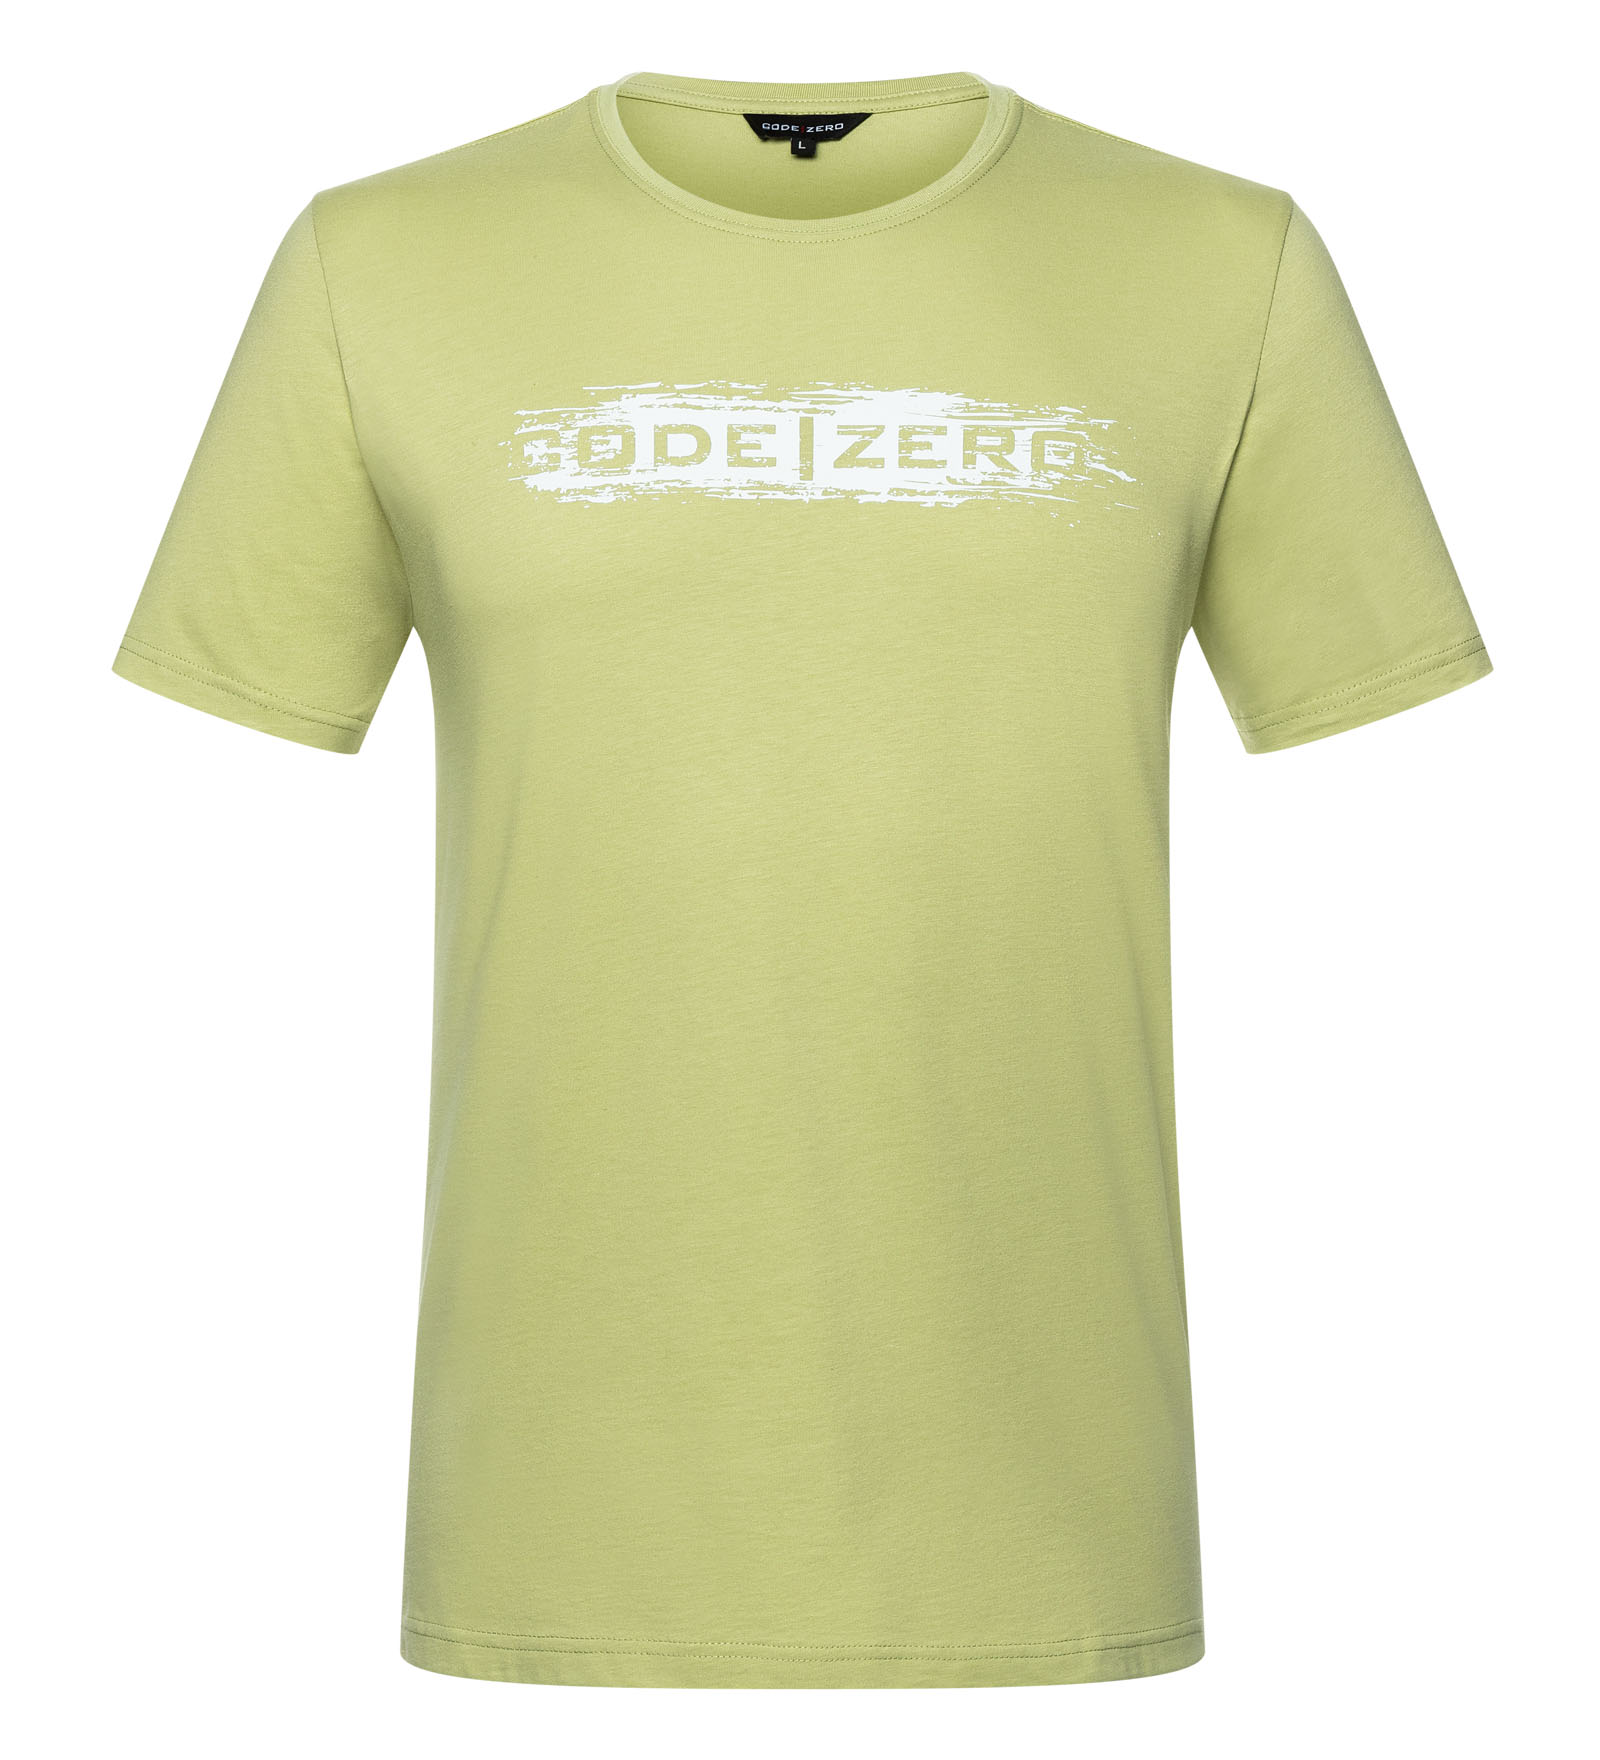 T-Shirt Herren Painted grün M CODE-ZERO von CODE-ZERO